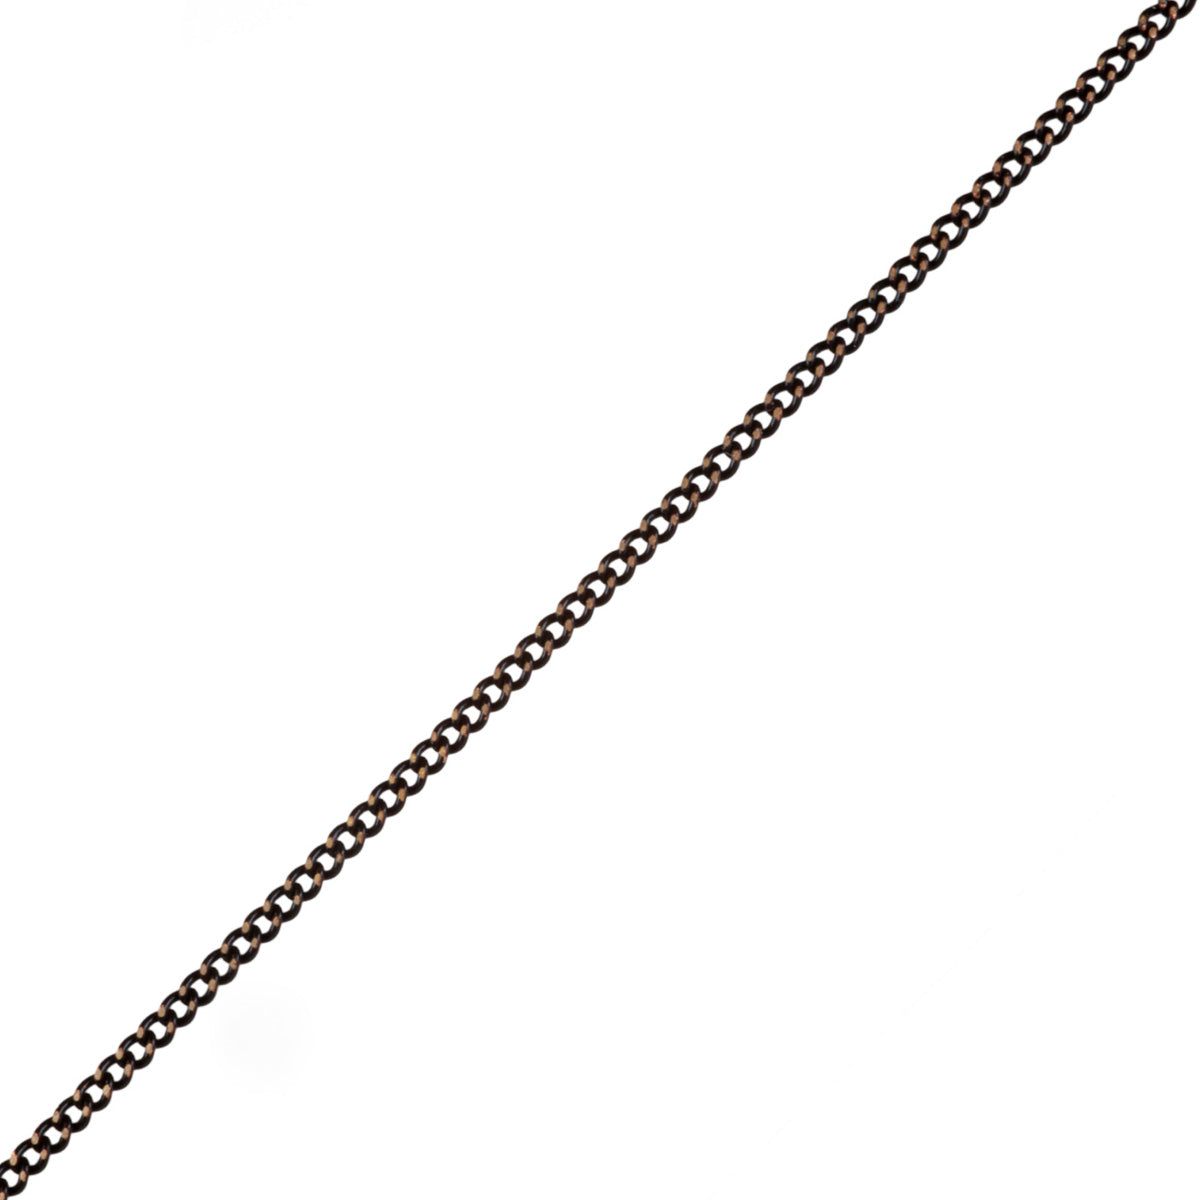 A thin armor chain 57cm